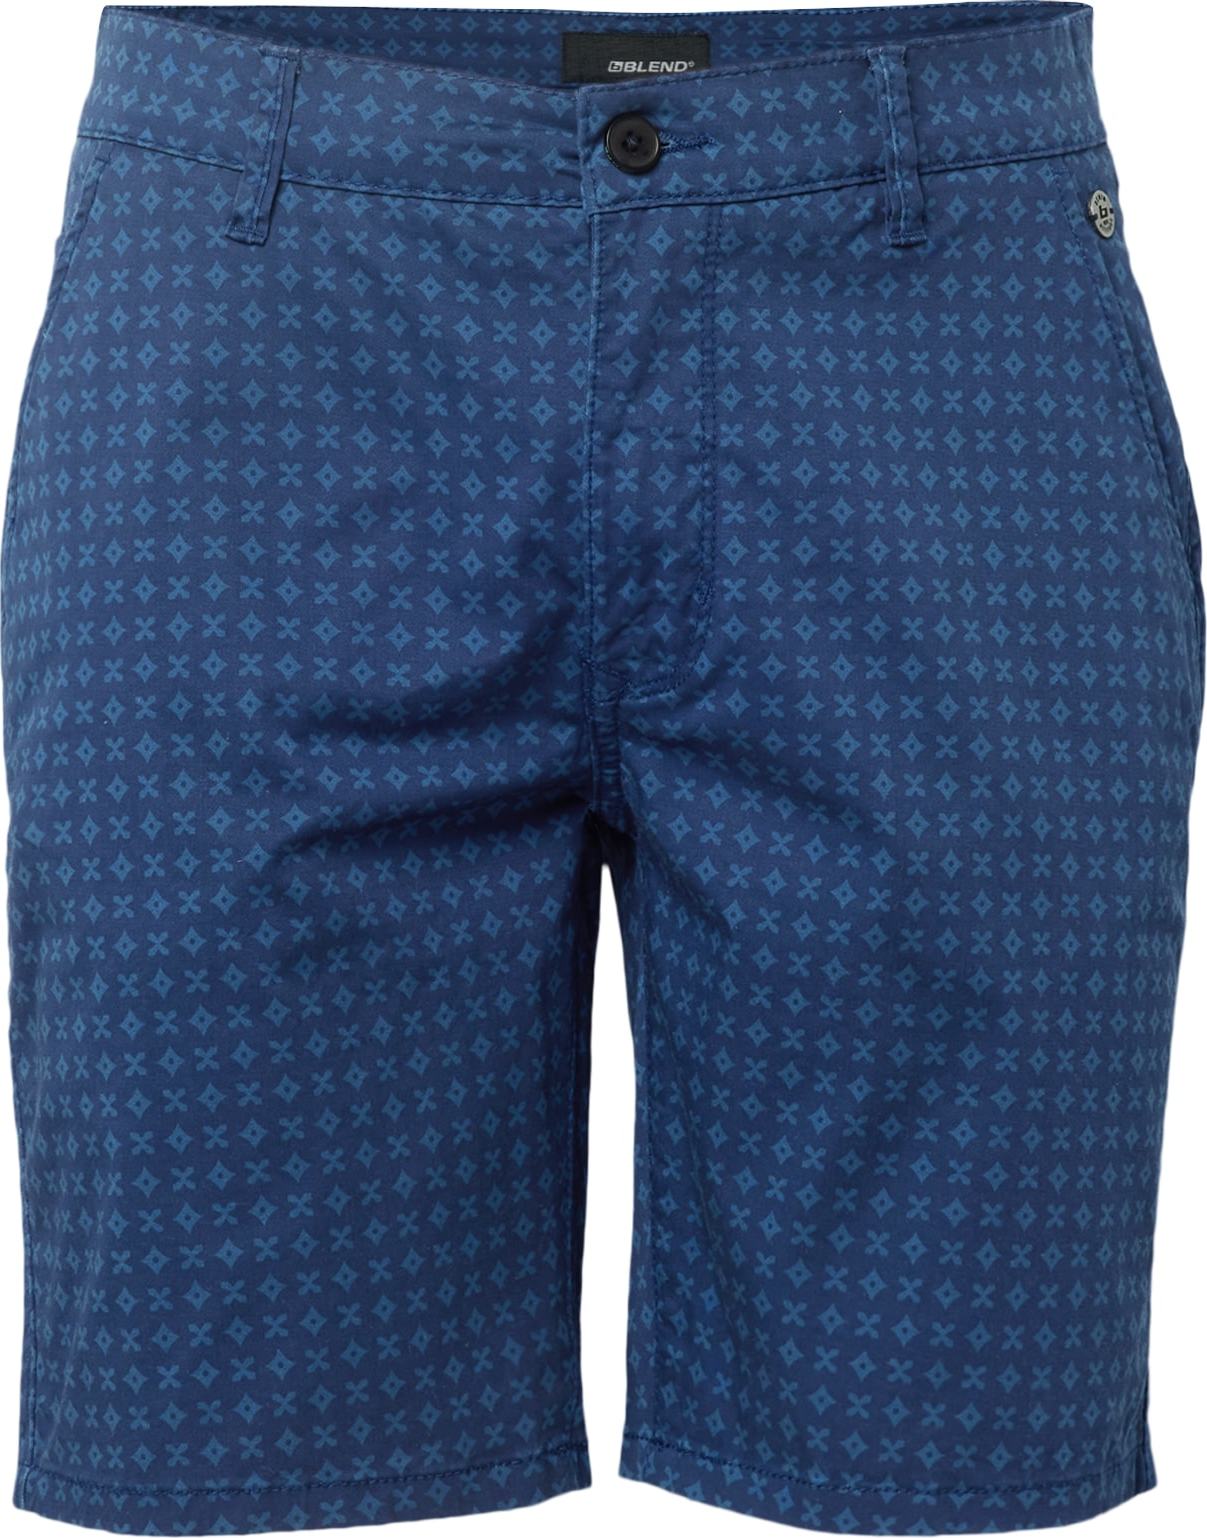 Chino kalhoty Blend kobaltová modř / enciánová modrá